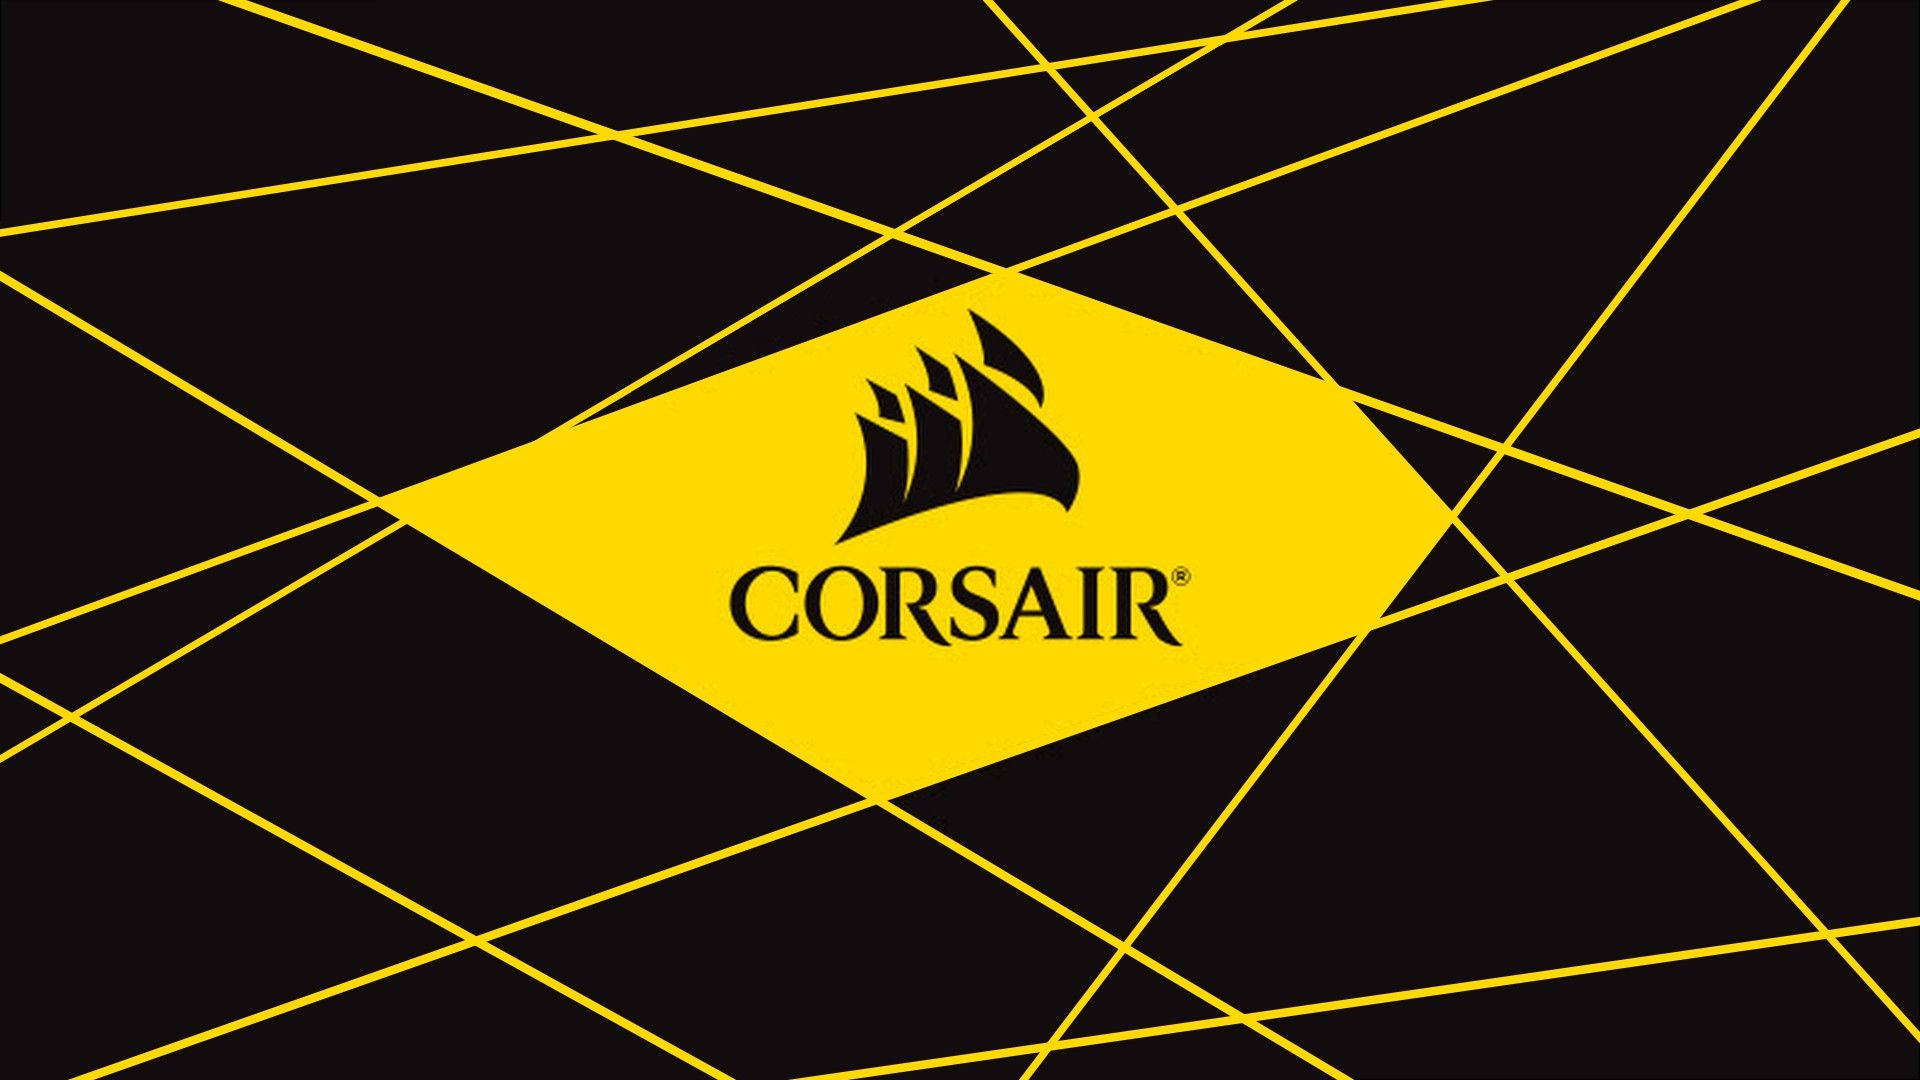 Corsair Pictures